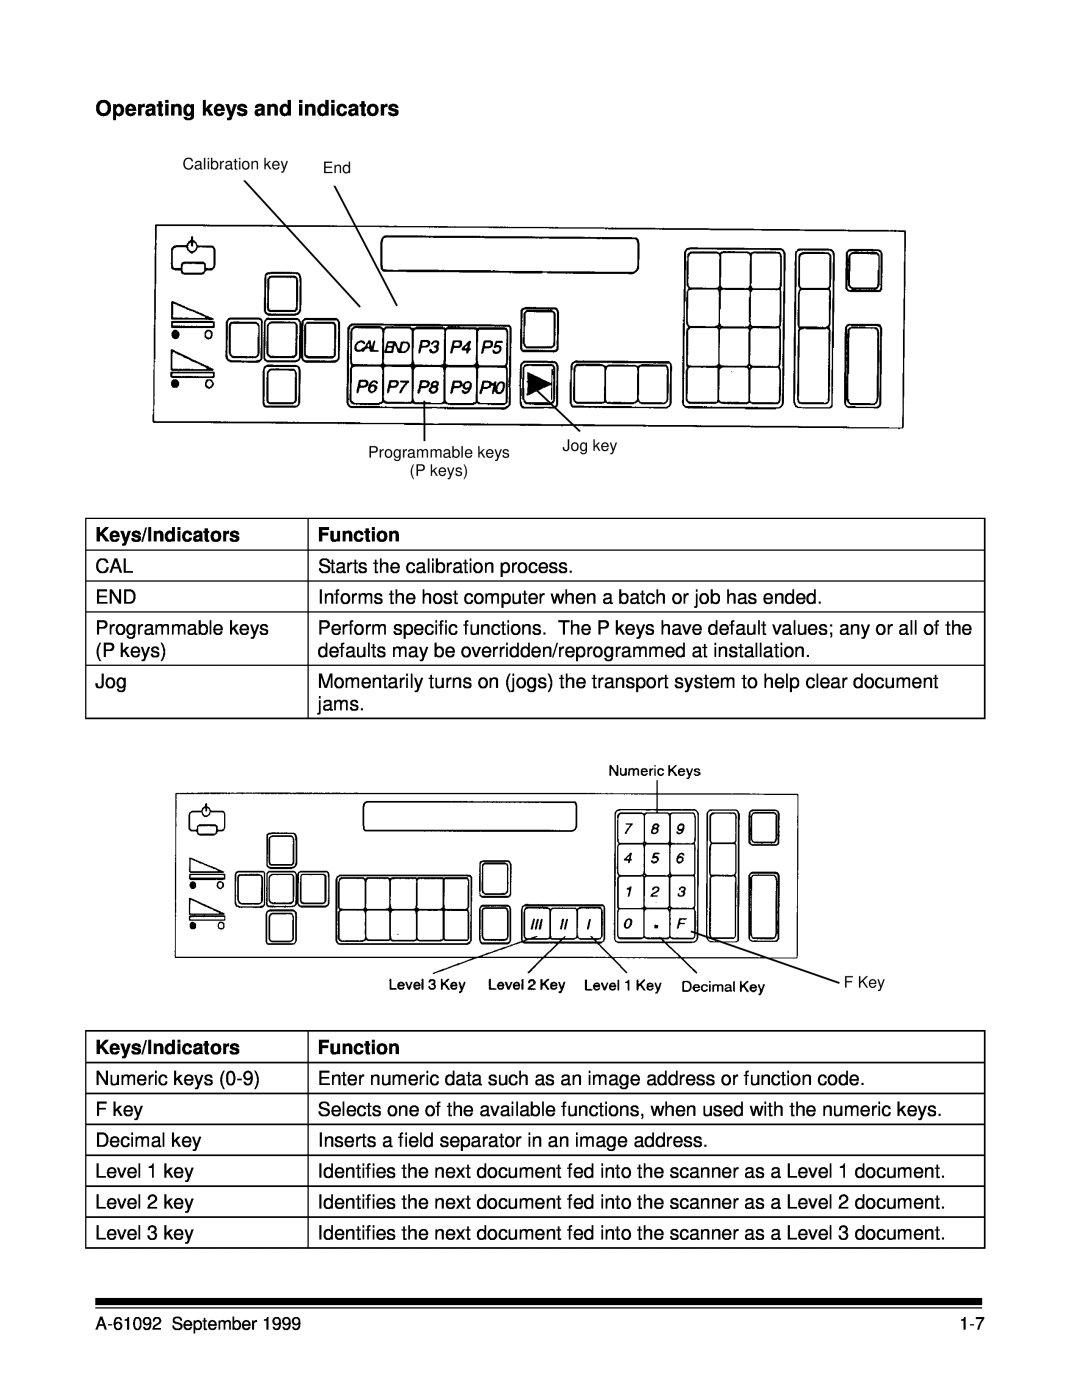 Kodak A-61092 manual Keys/Indicators, Operating keys and indicators, Function 